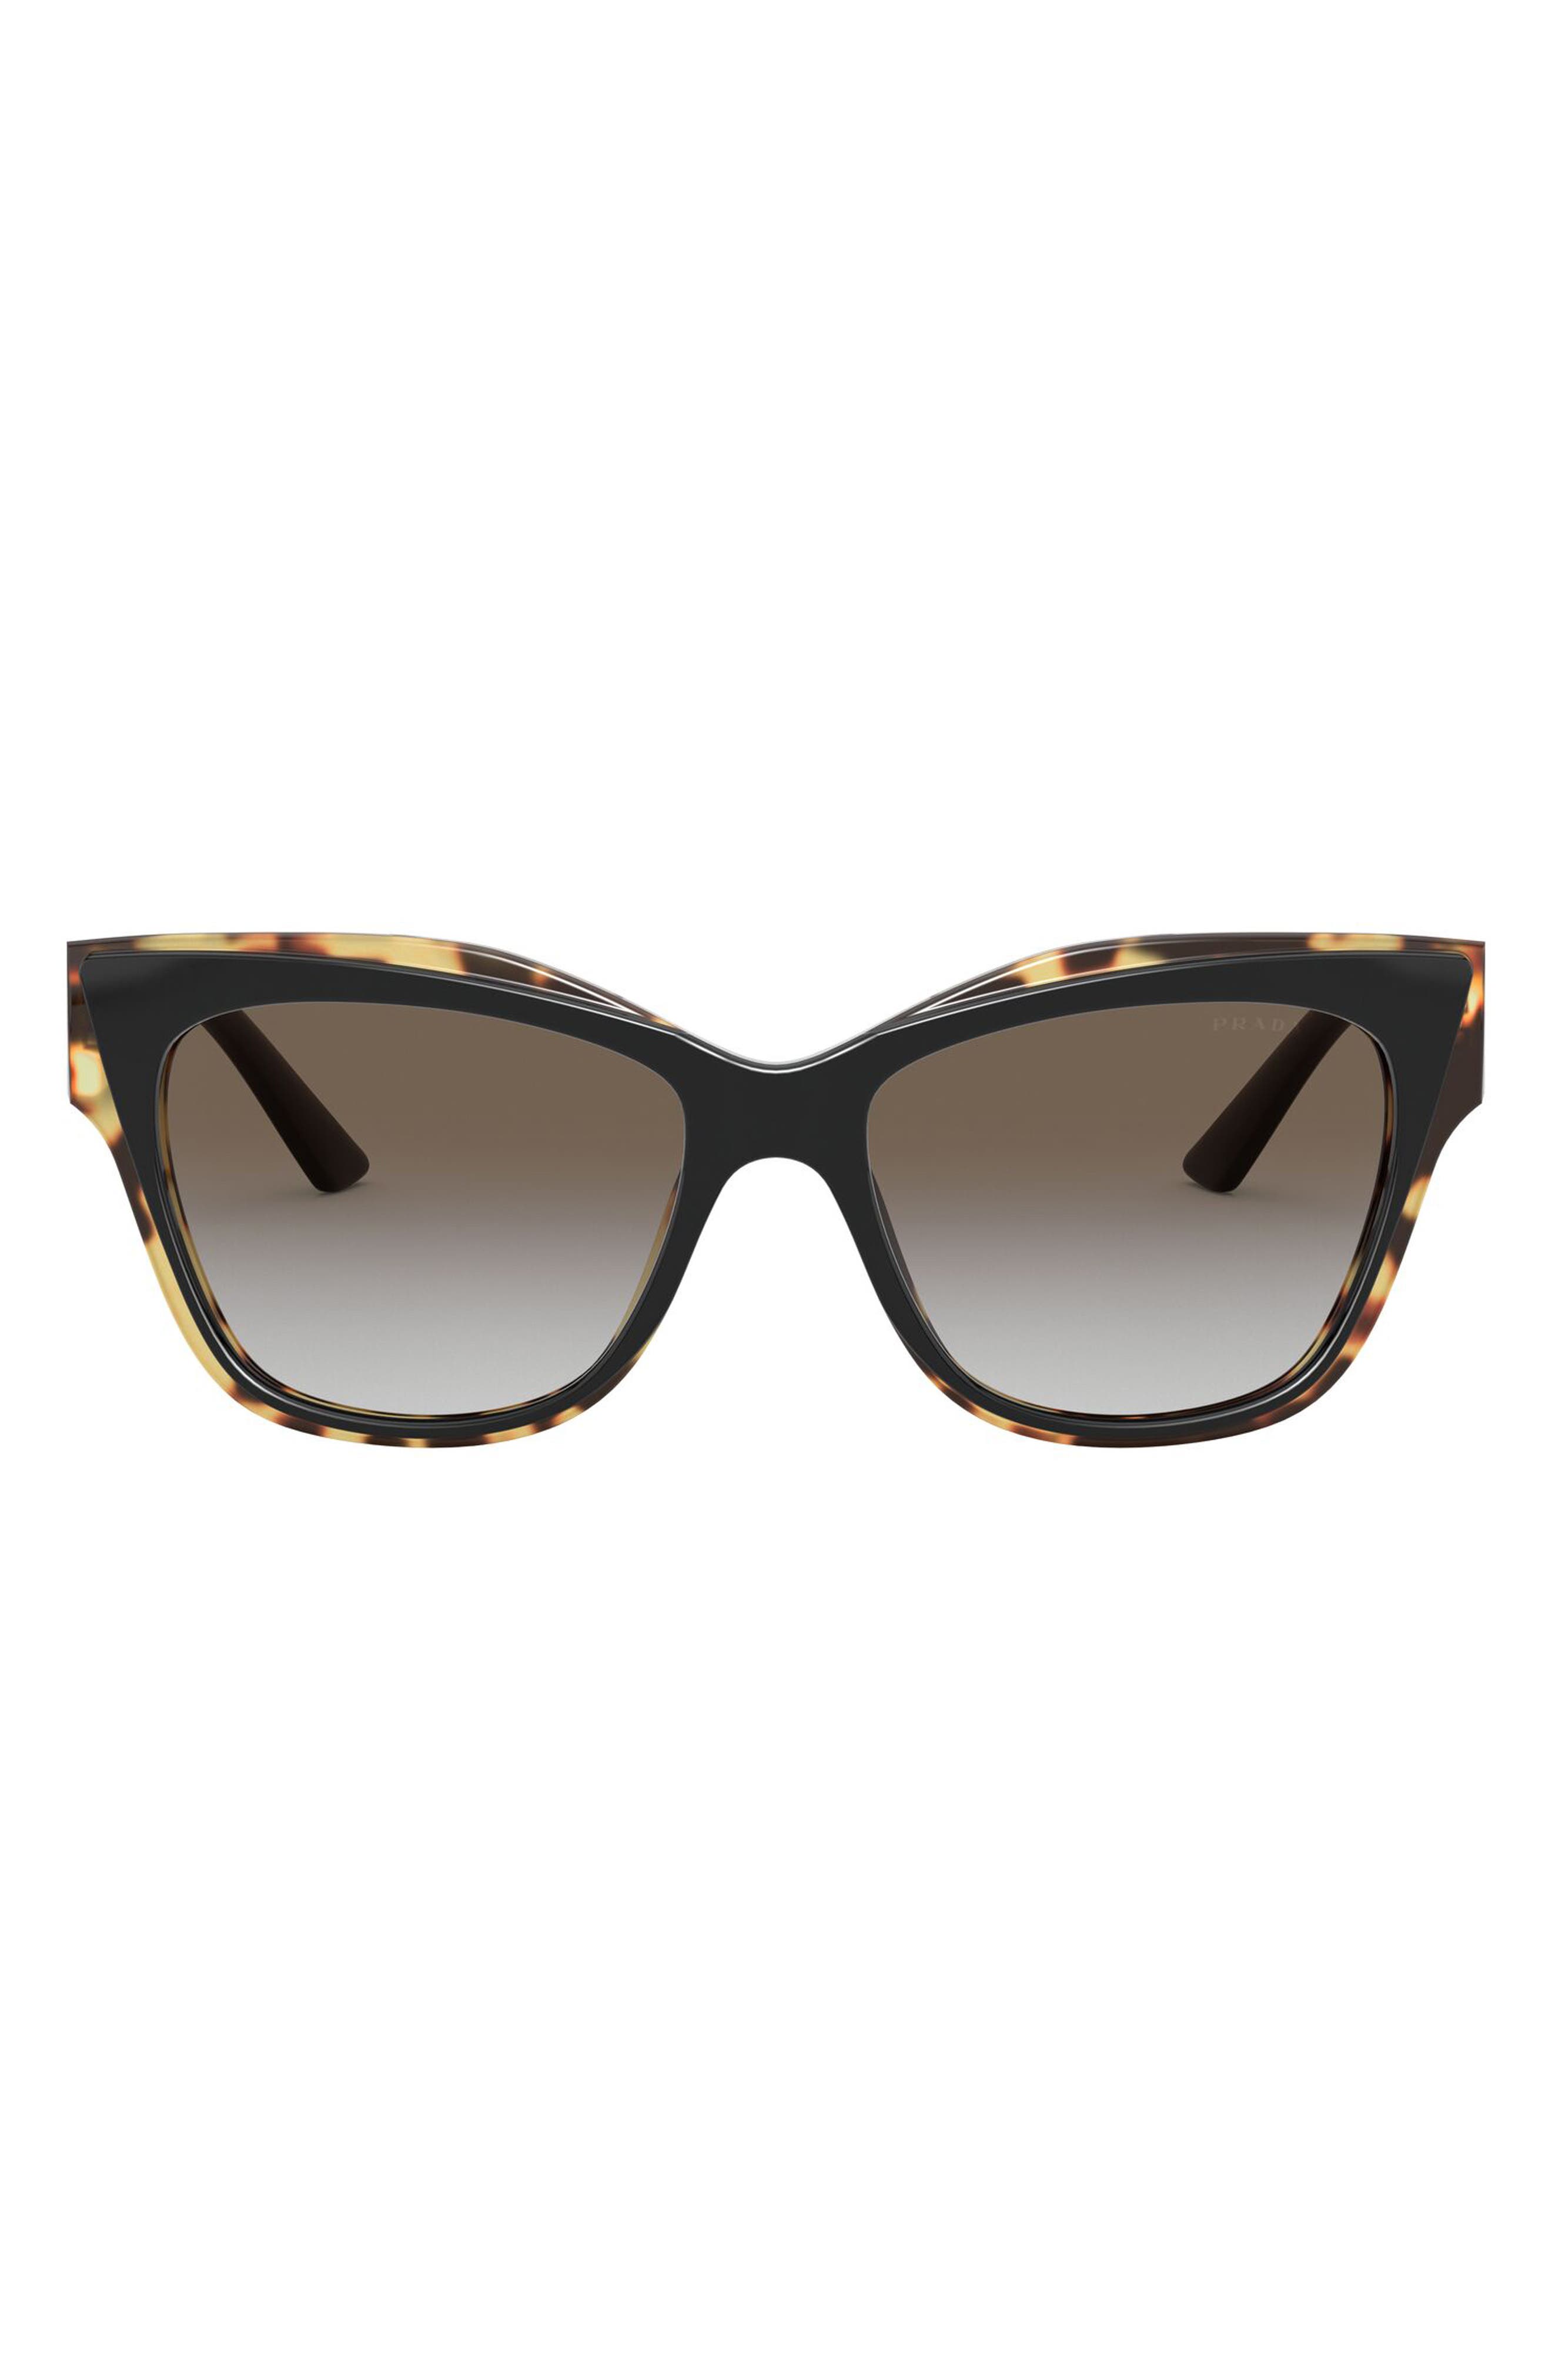 Prada 55mm Cat Eye Sunglasses in Black/Havana Media/Grey Gr at Nordstrom